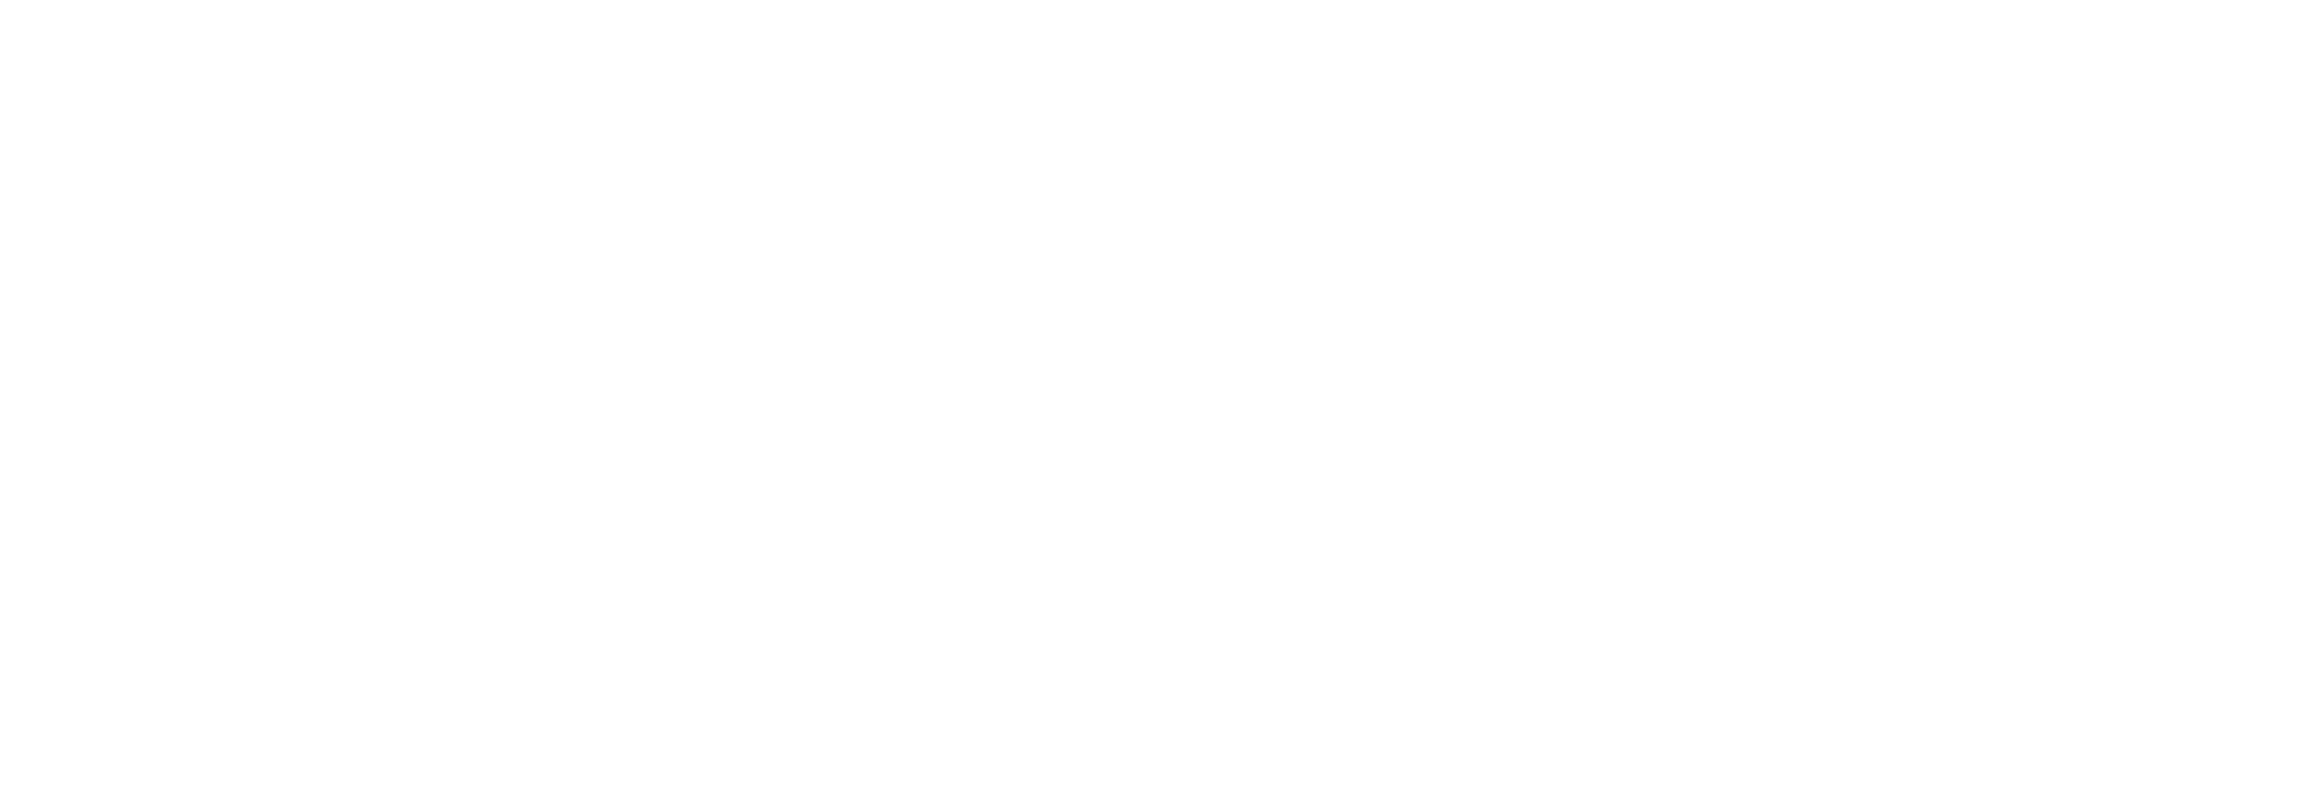 MIAF logo